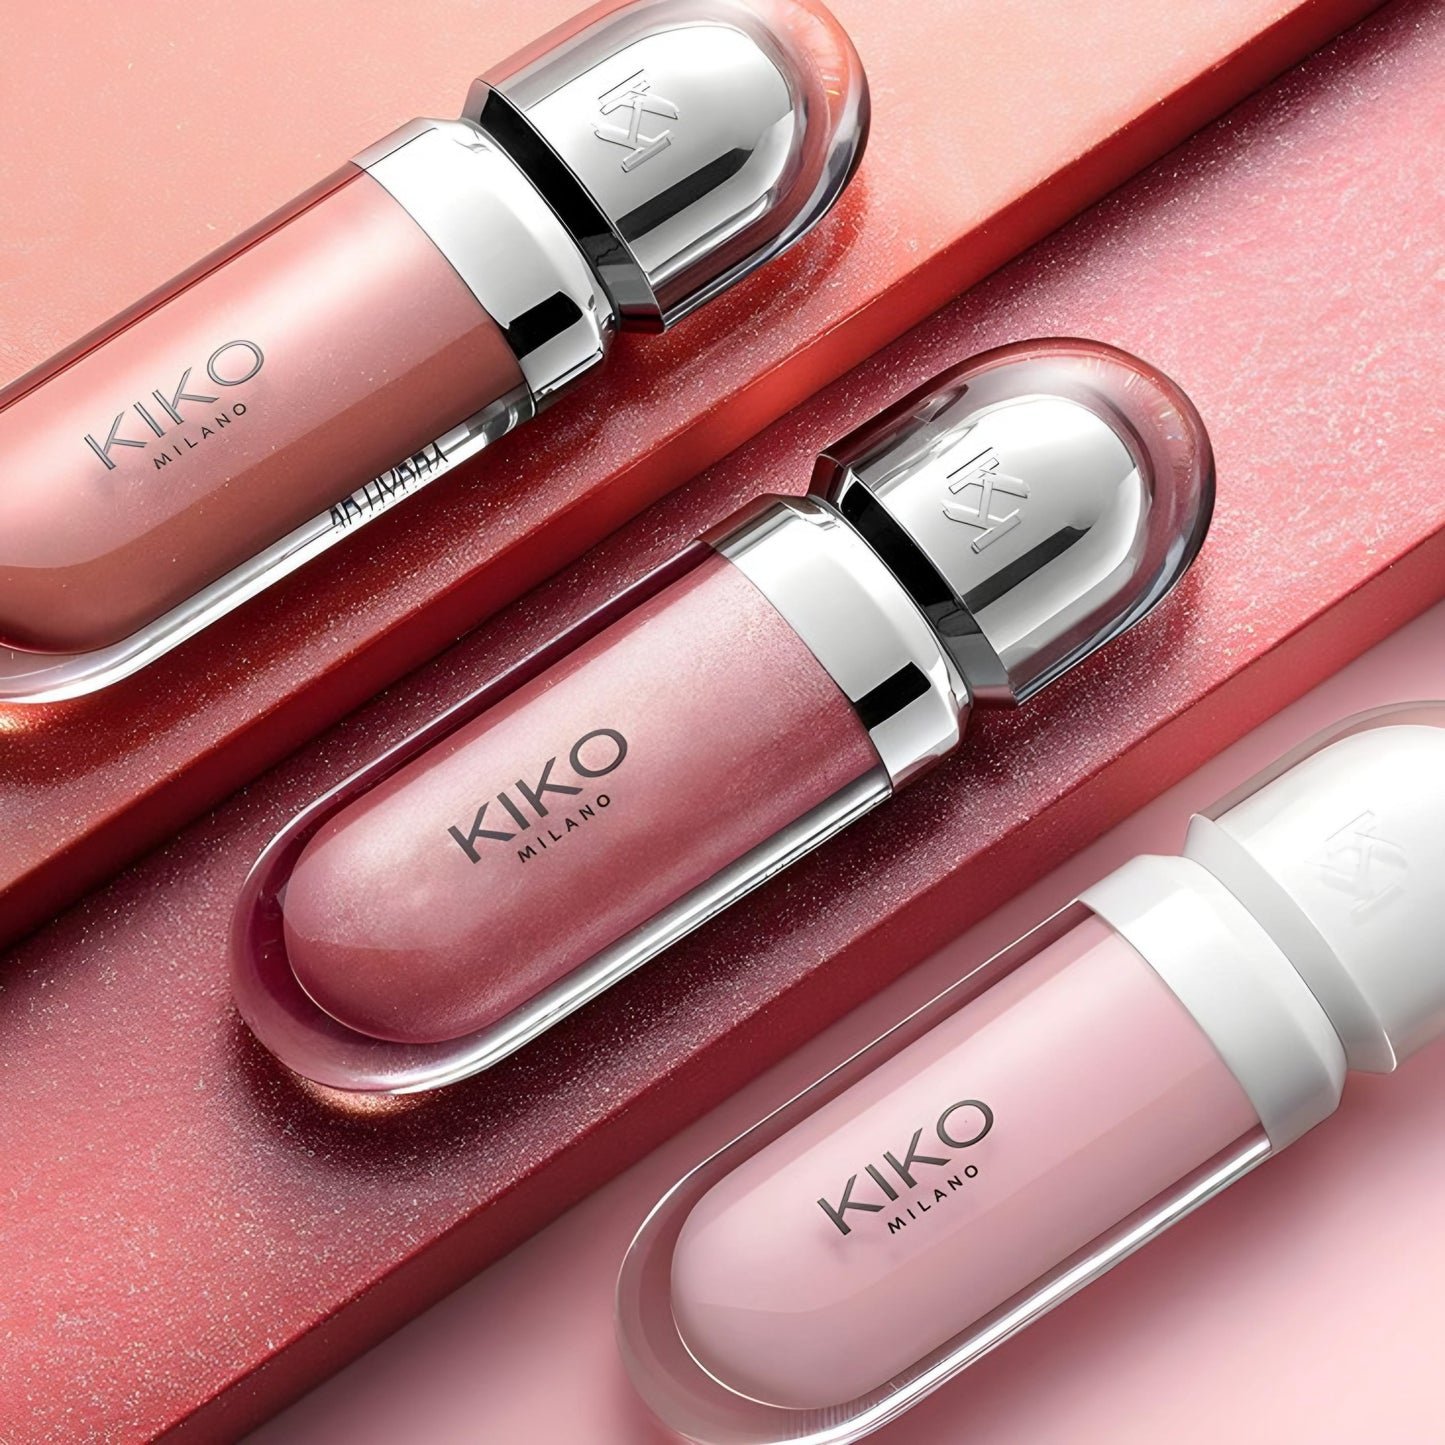 Kiko milano lipgloss some shades 